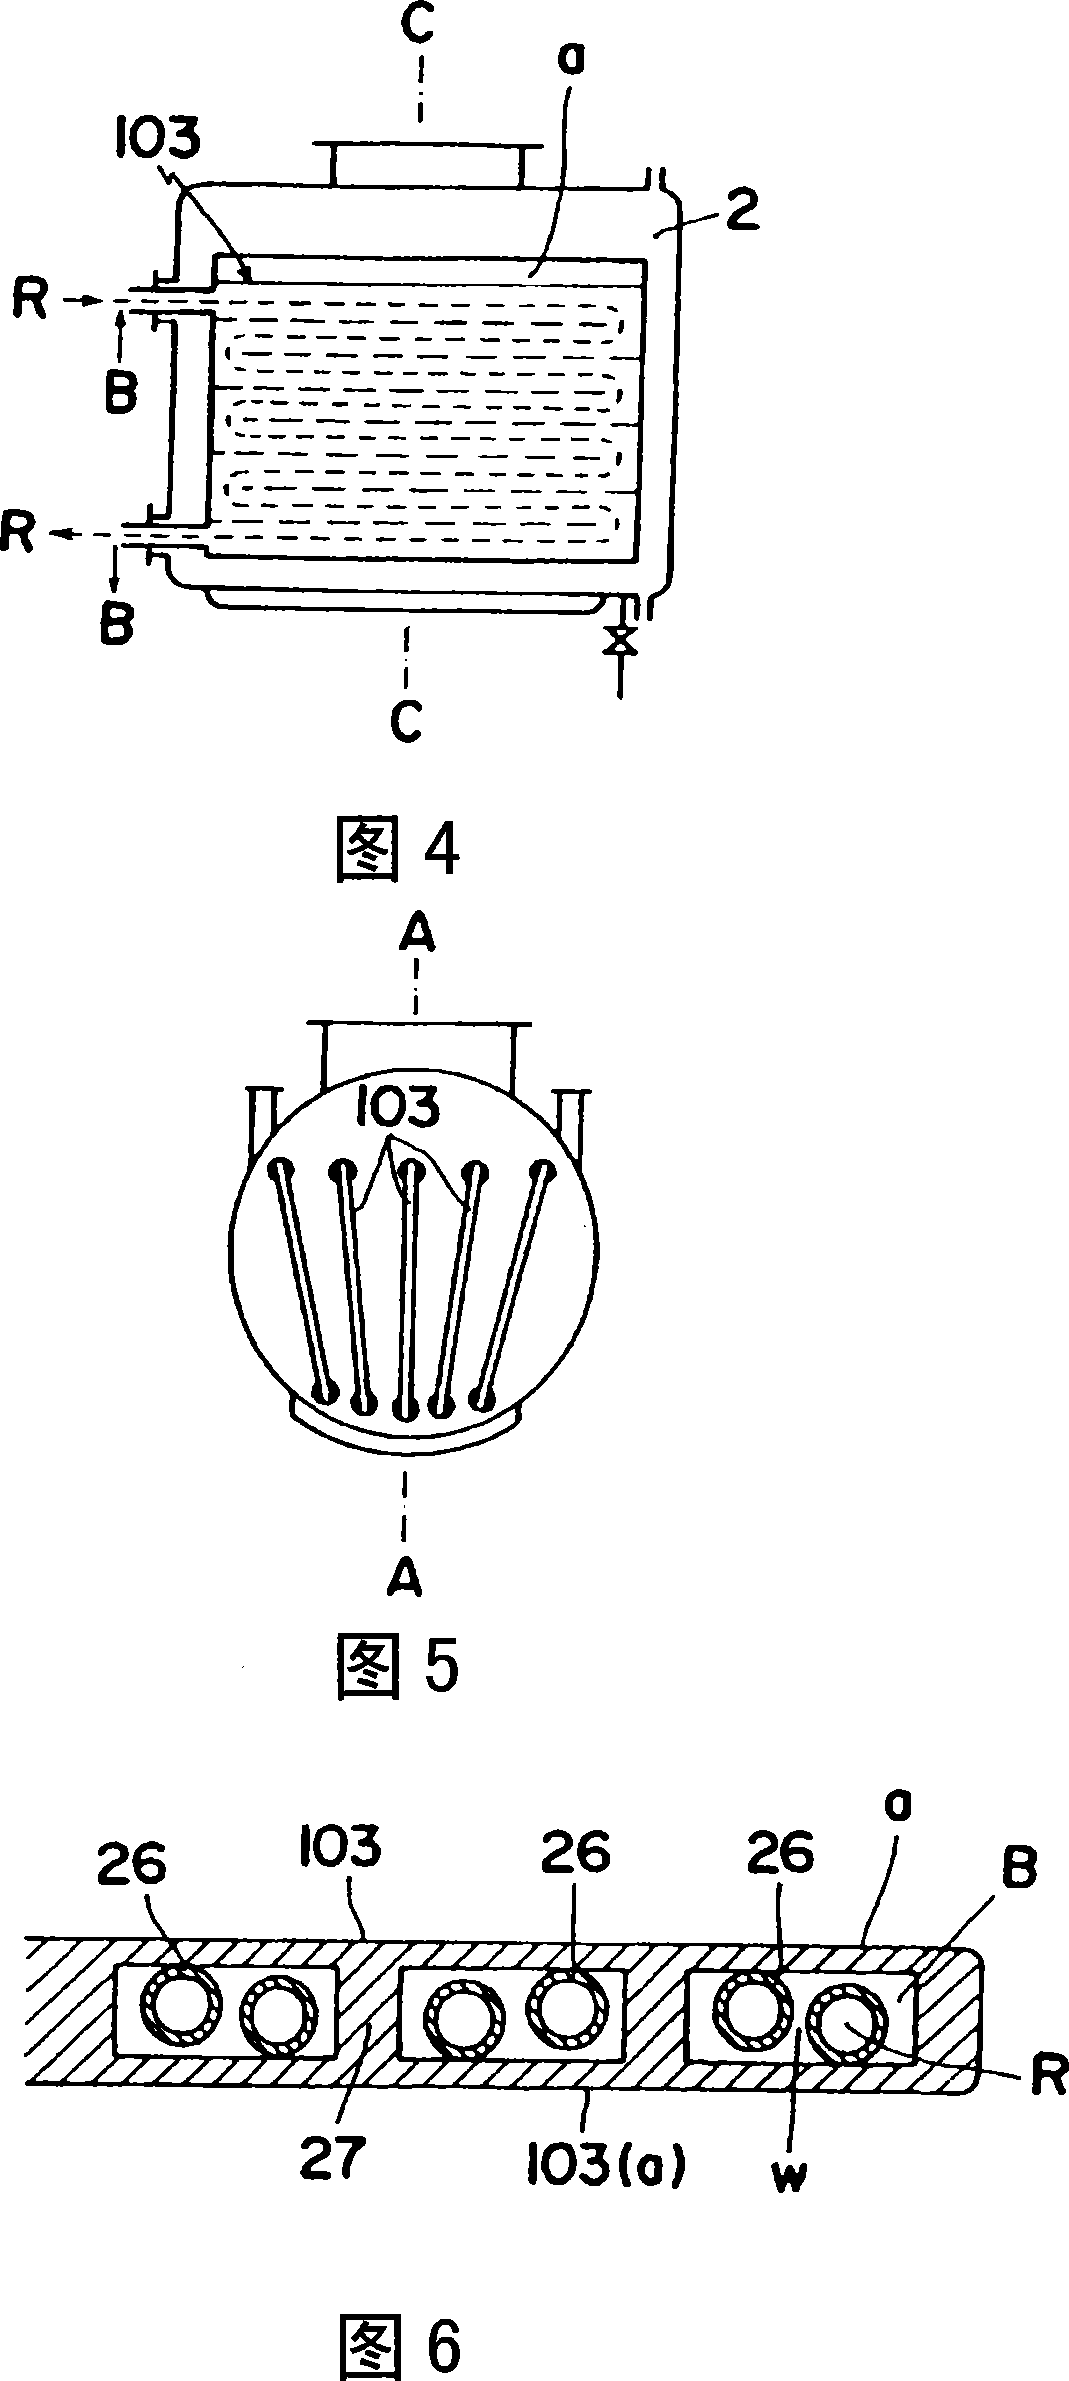 Steam condenser of vacuum plant